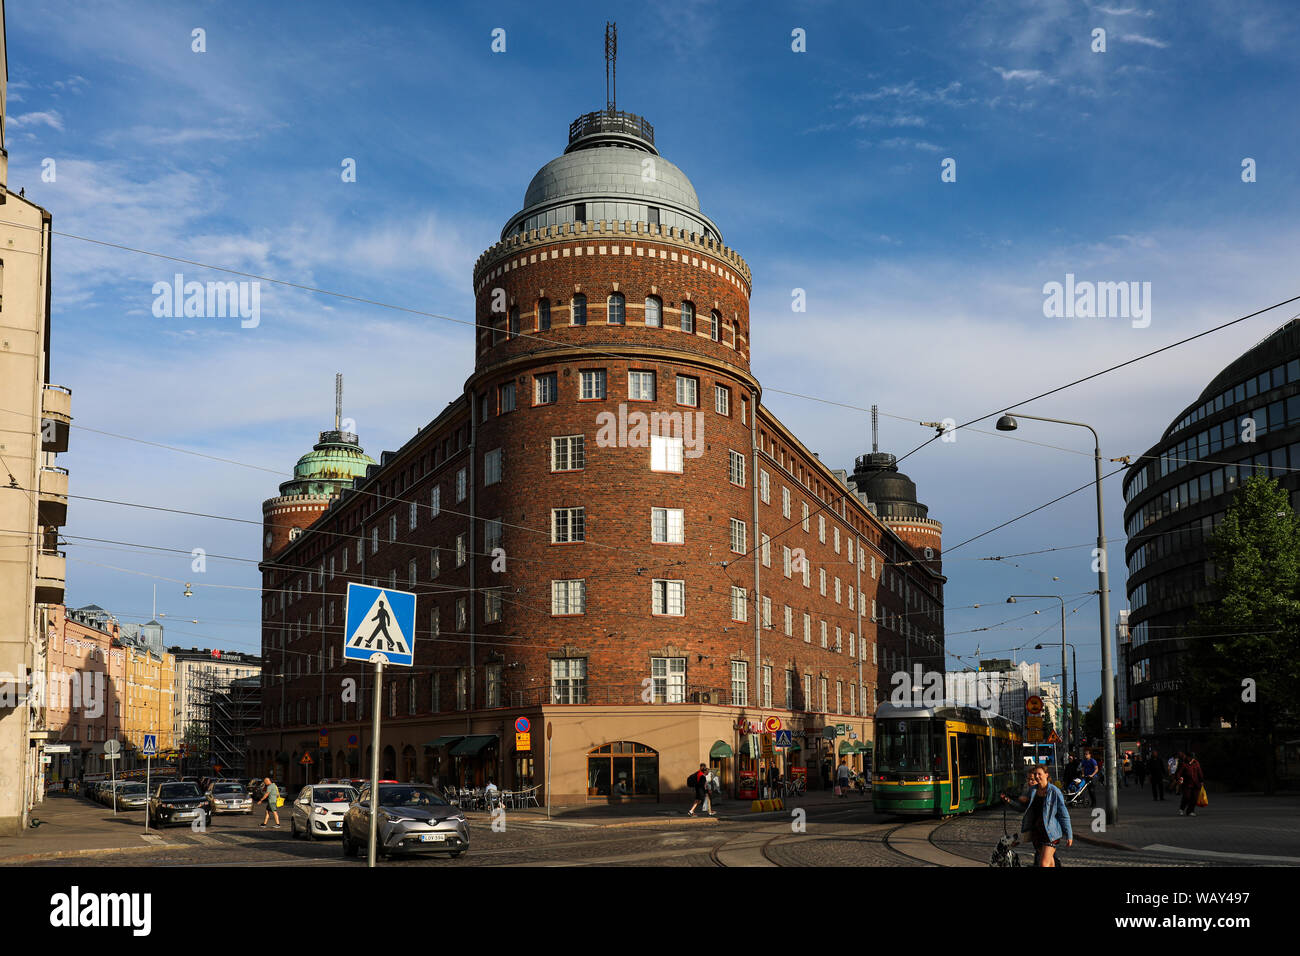 Arenan talo, eine dreieckige Gebäude von Architekt Lars Sonck, im Stadtteil Hakaniemi direkt von Helsinki, Finnland Stockfoto